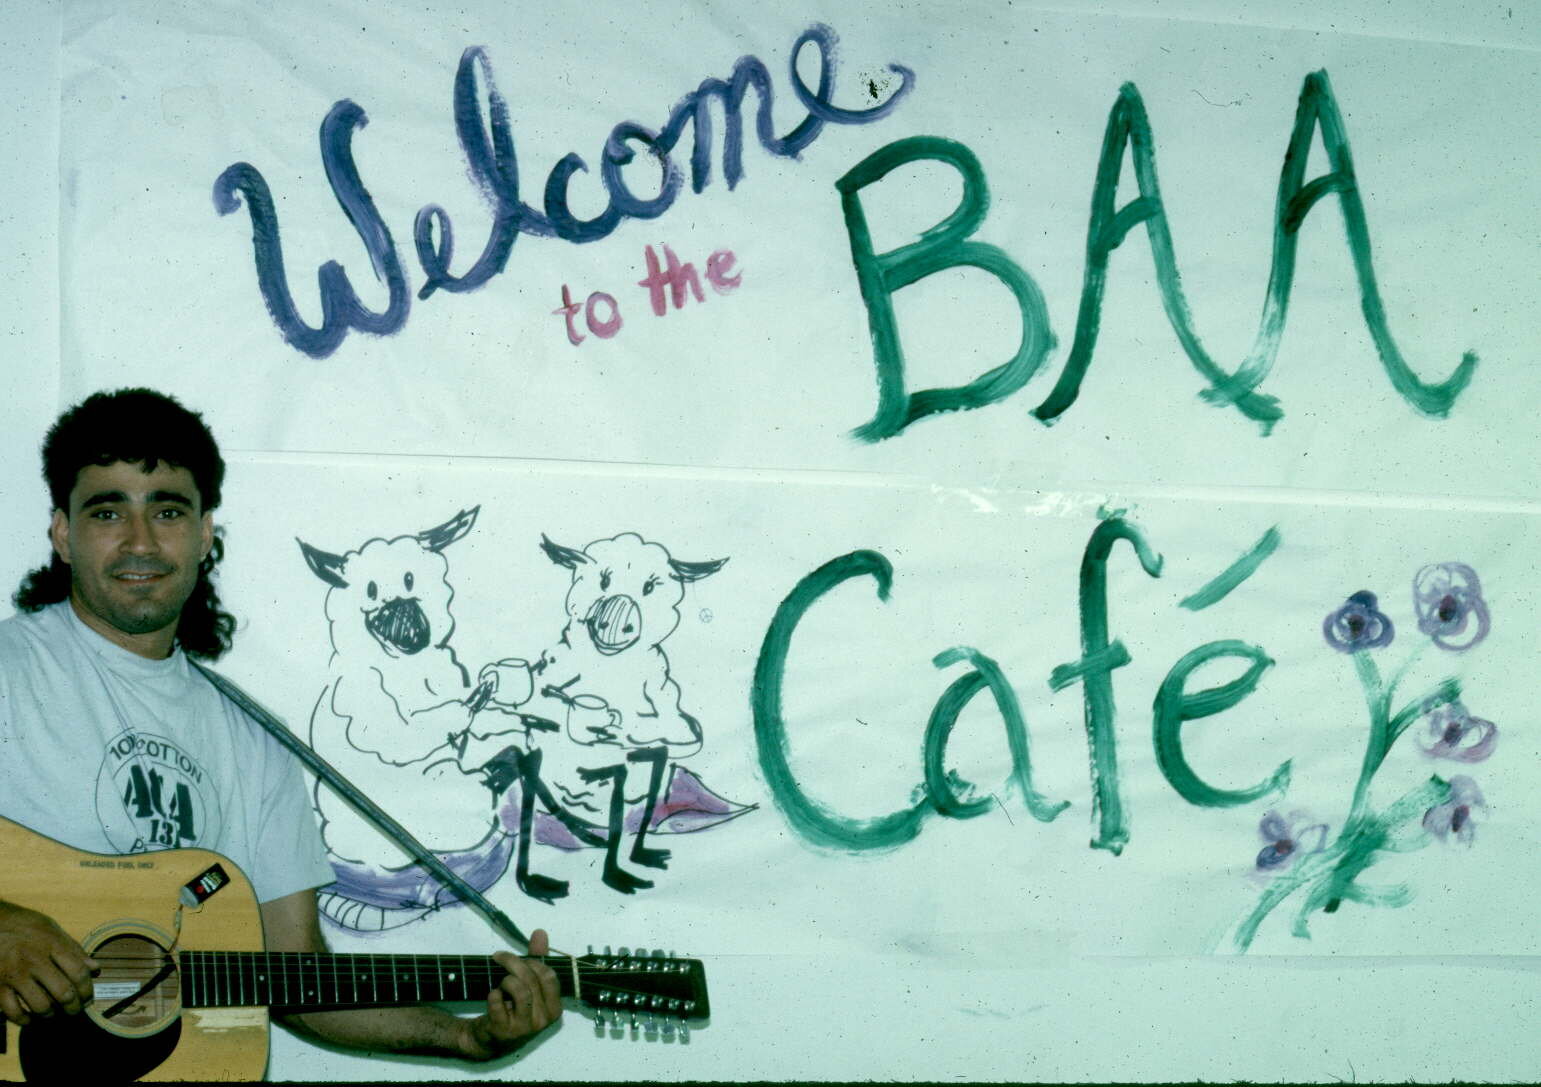 BAA Cafe.jpg